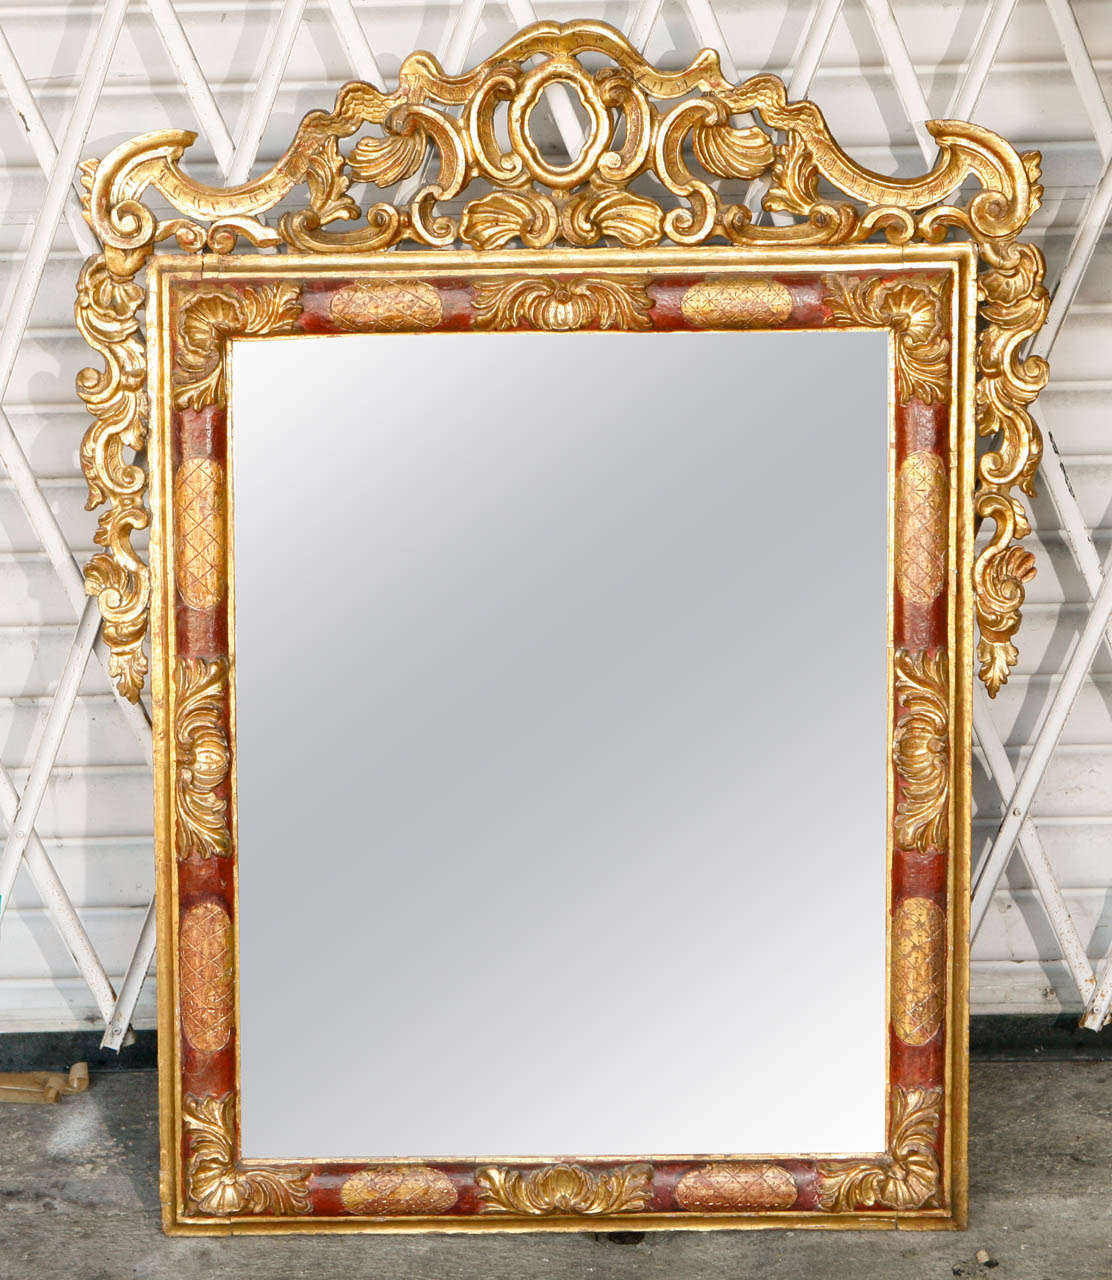 Miroir italien en bois doré sculpté de la fin du 18e siècle - début du 19e siècle, avec un bel accent rouge et doré.